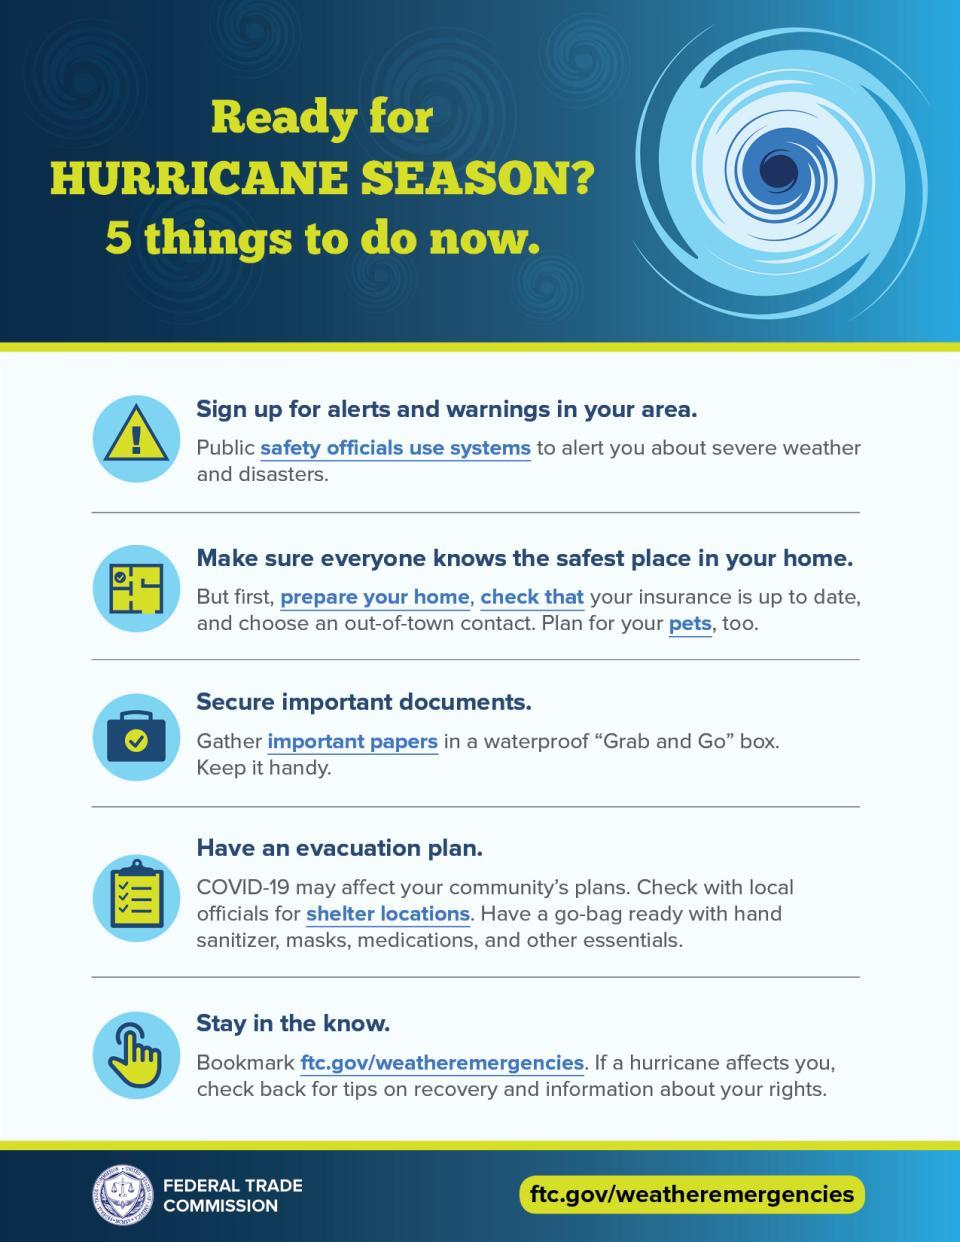 How to prepare for hurricane season